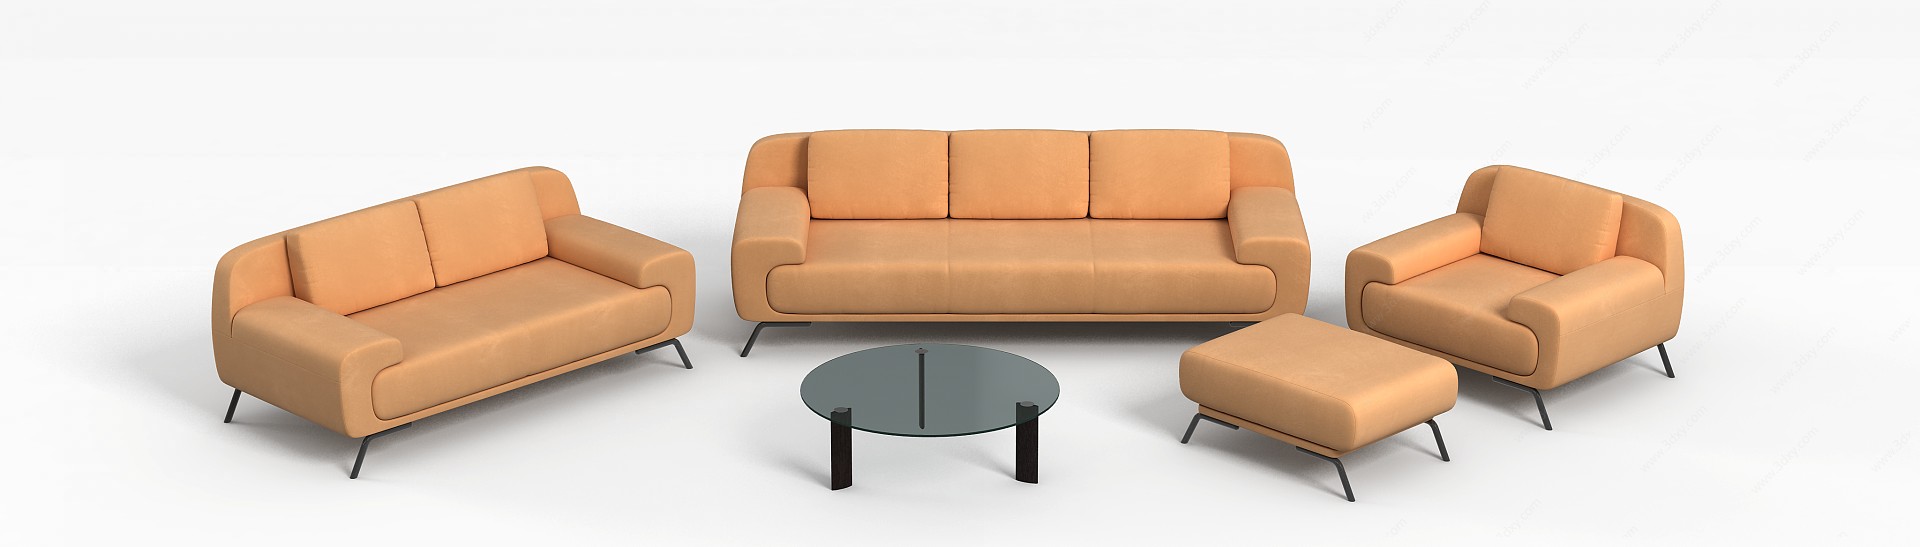 简约现代沙发3D模型